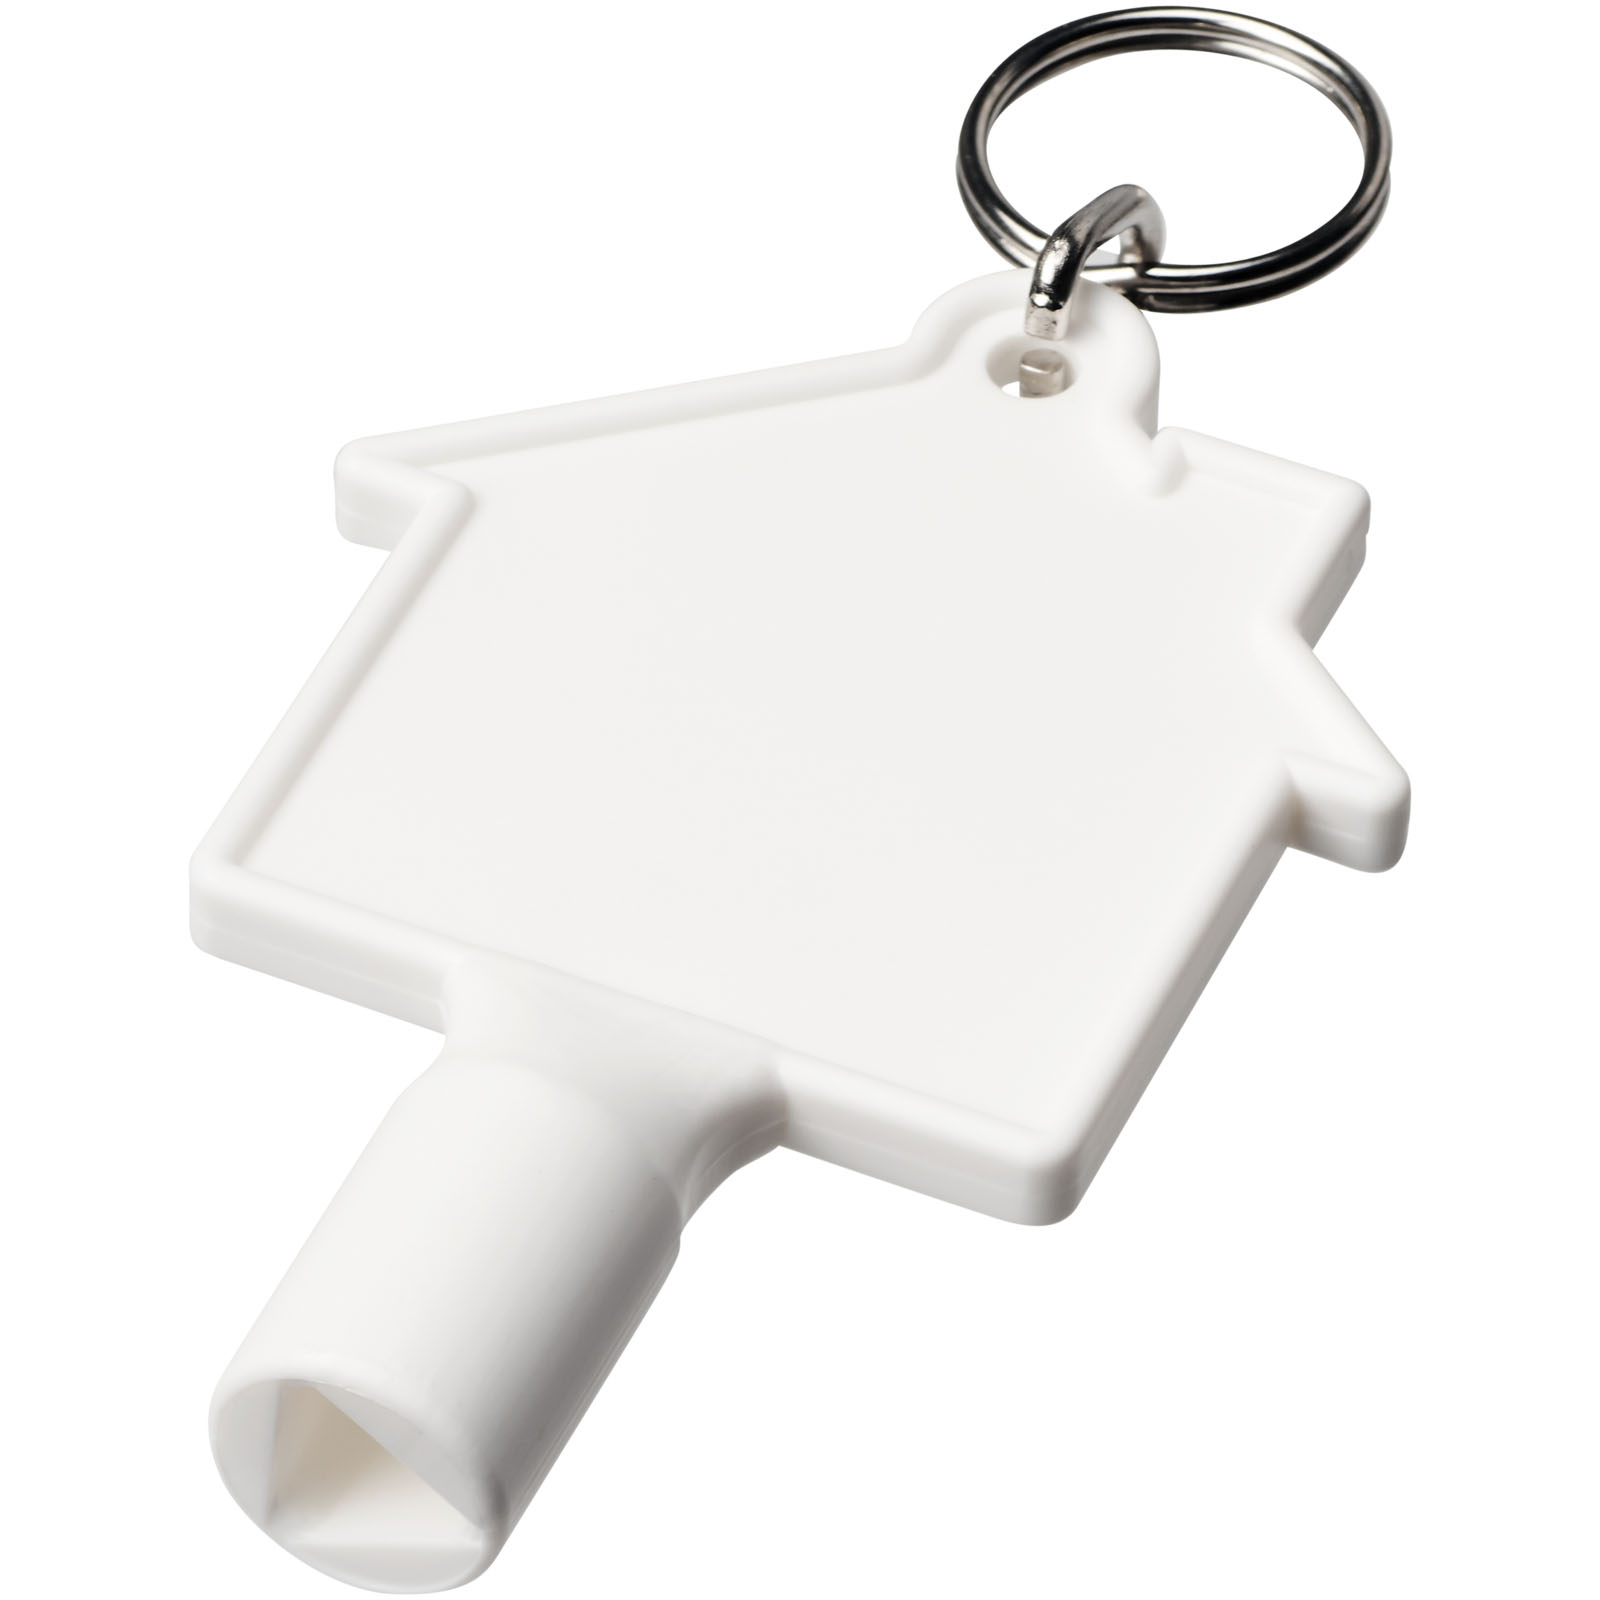 Porte-clés publicitaires - Porte-clés Maximilian pour clé utilitaire recyclée en forme de maison - 0